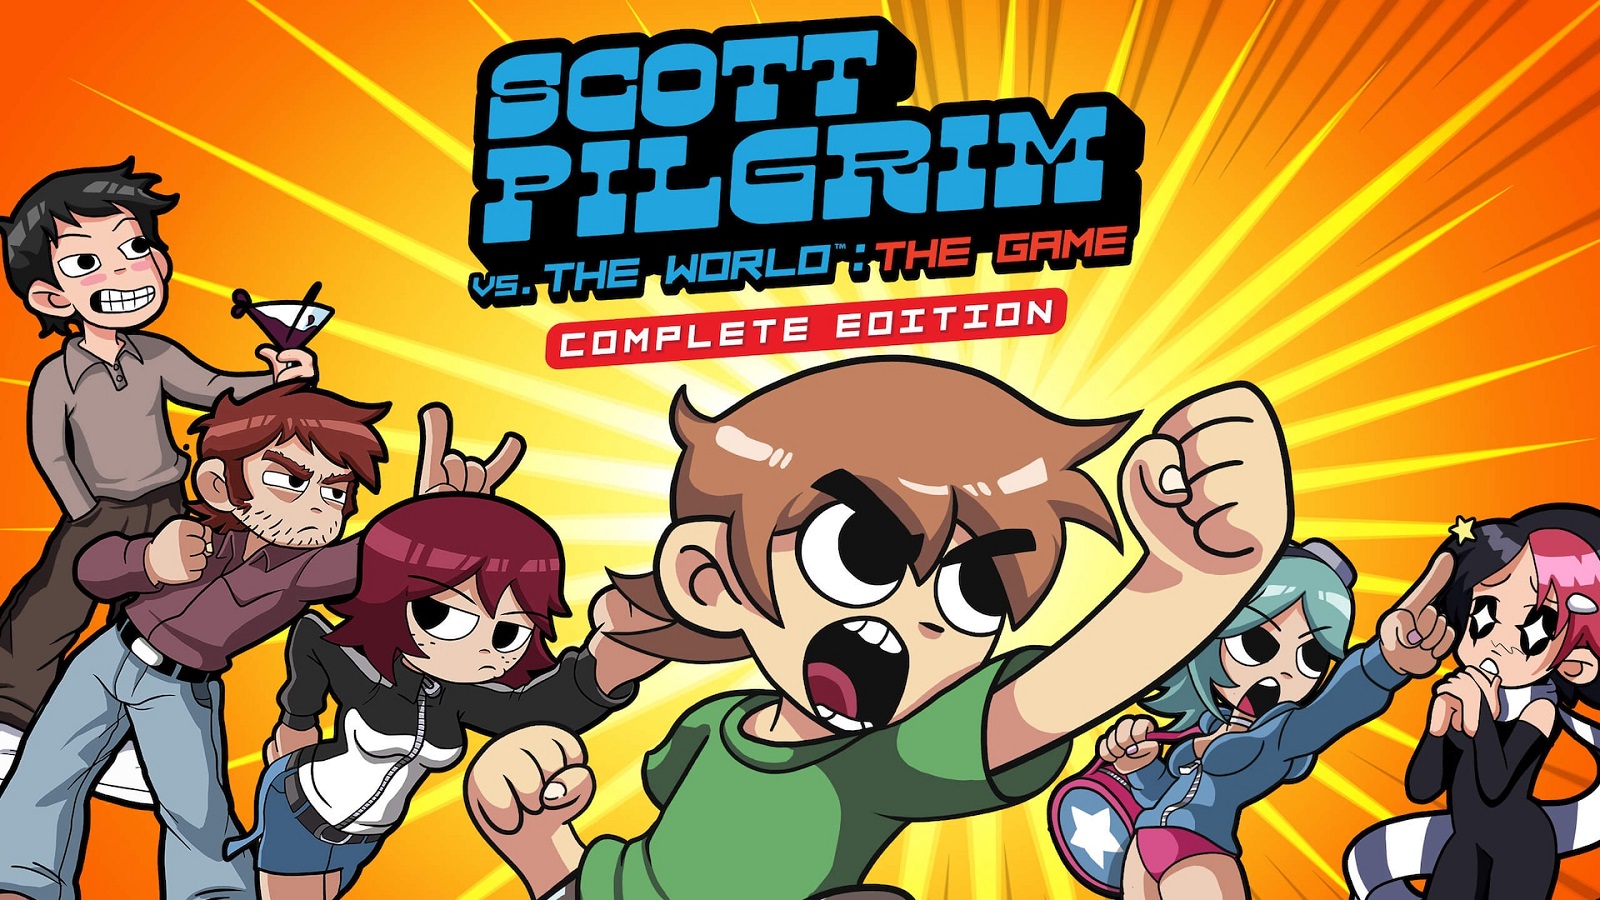 Ubisoft lança Scott Pilgrim vs The World: The Game – Complete Edition e redescobre clássico do estilo beat ’em up 